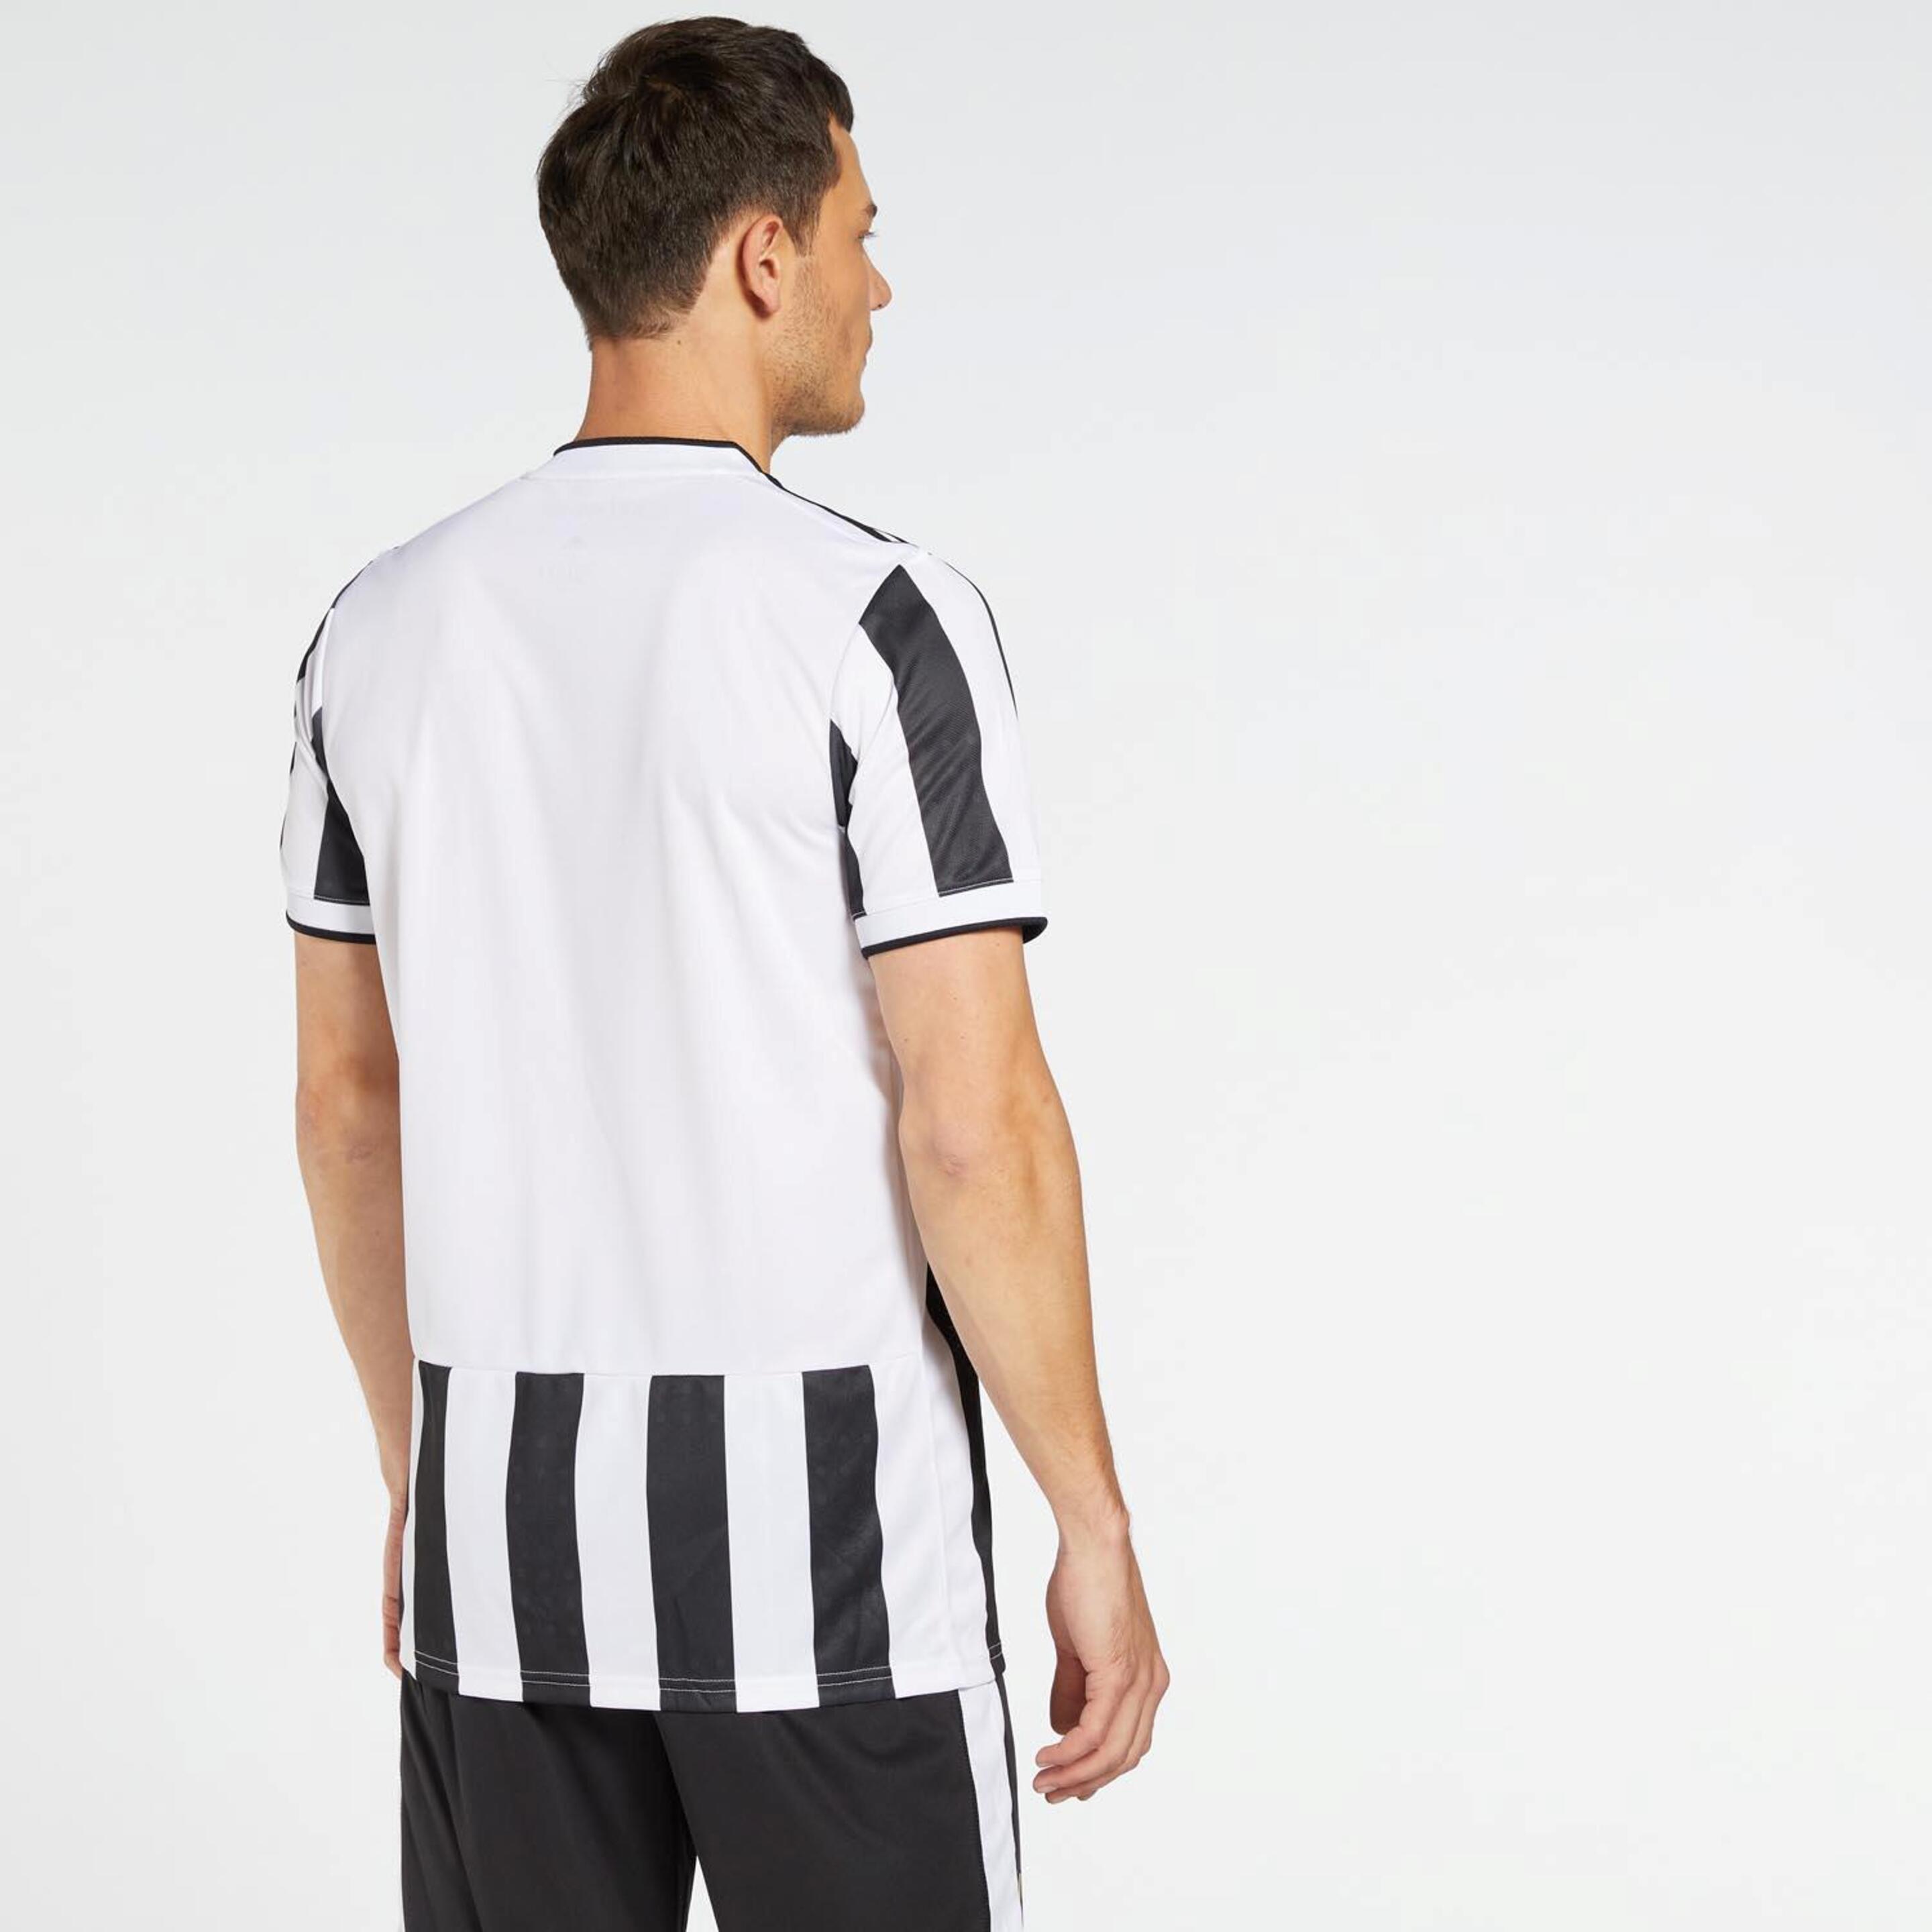 Camiseta Juventus